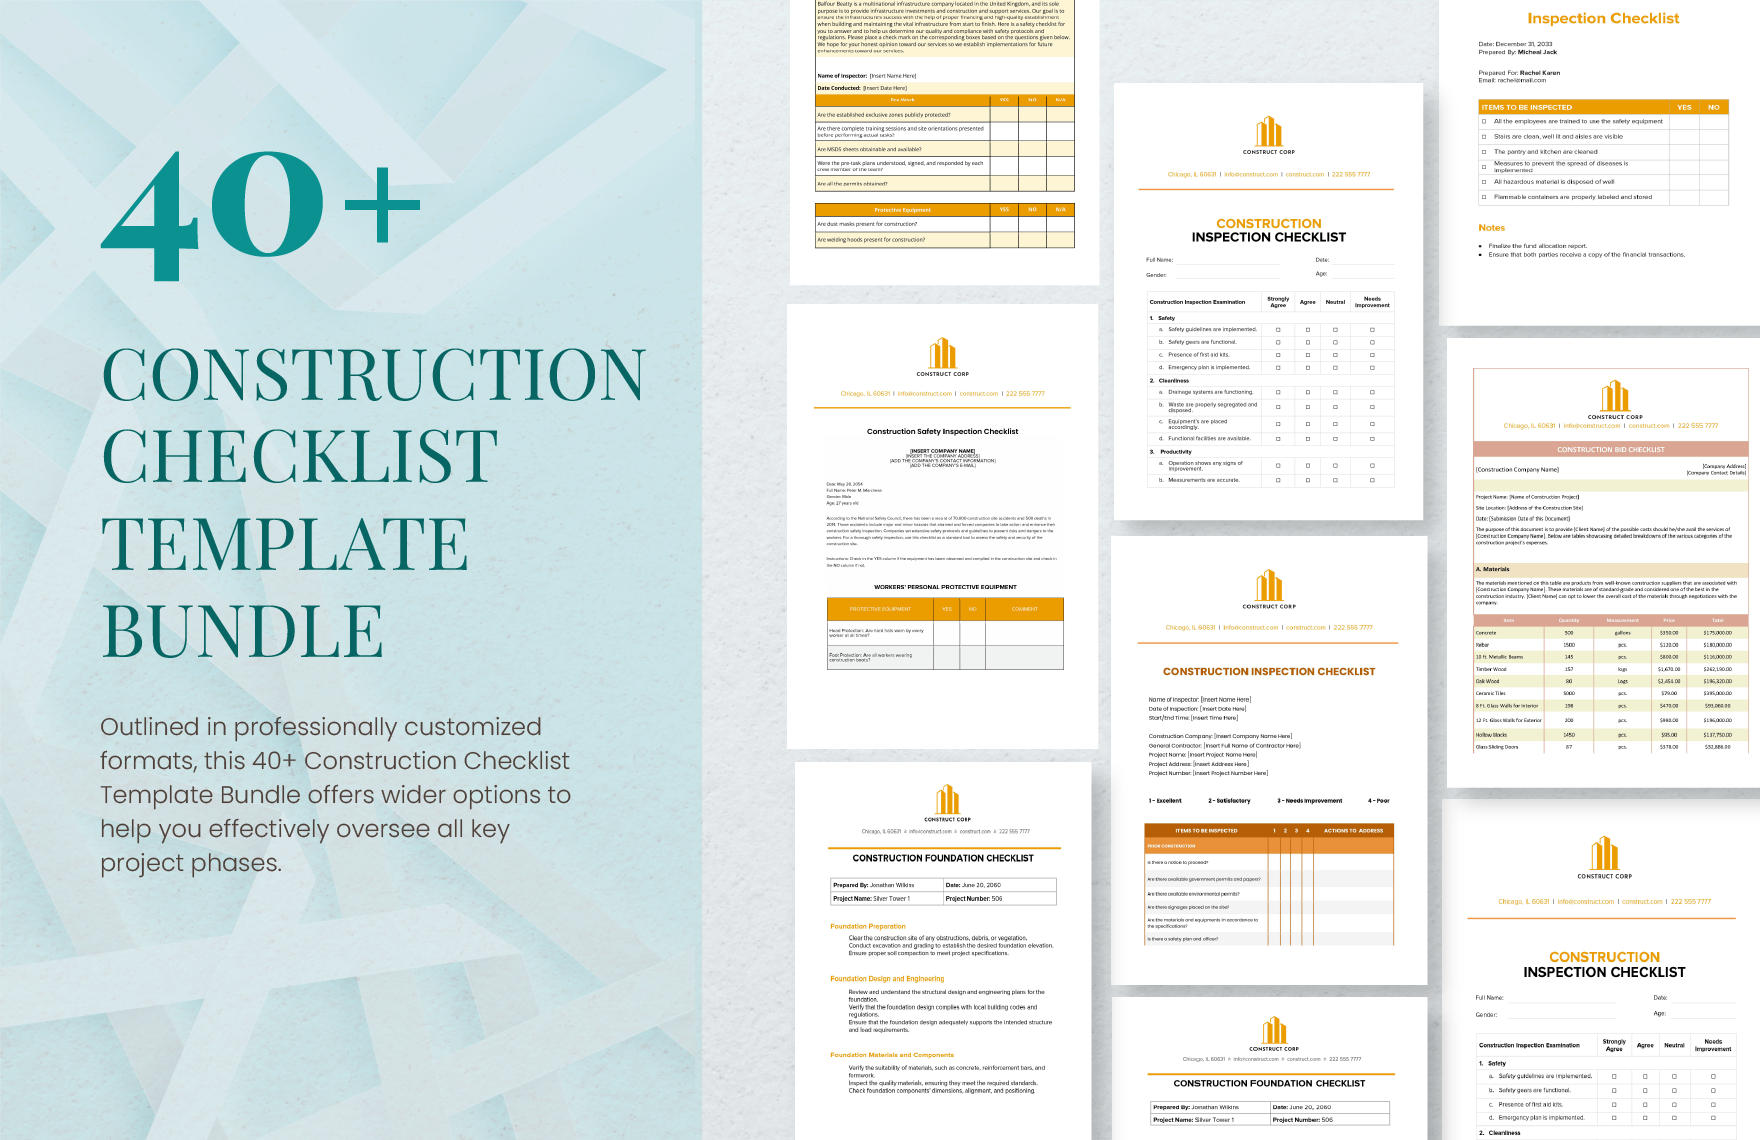 40+ Construction Checklist Template Bundle